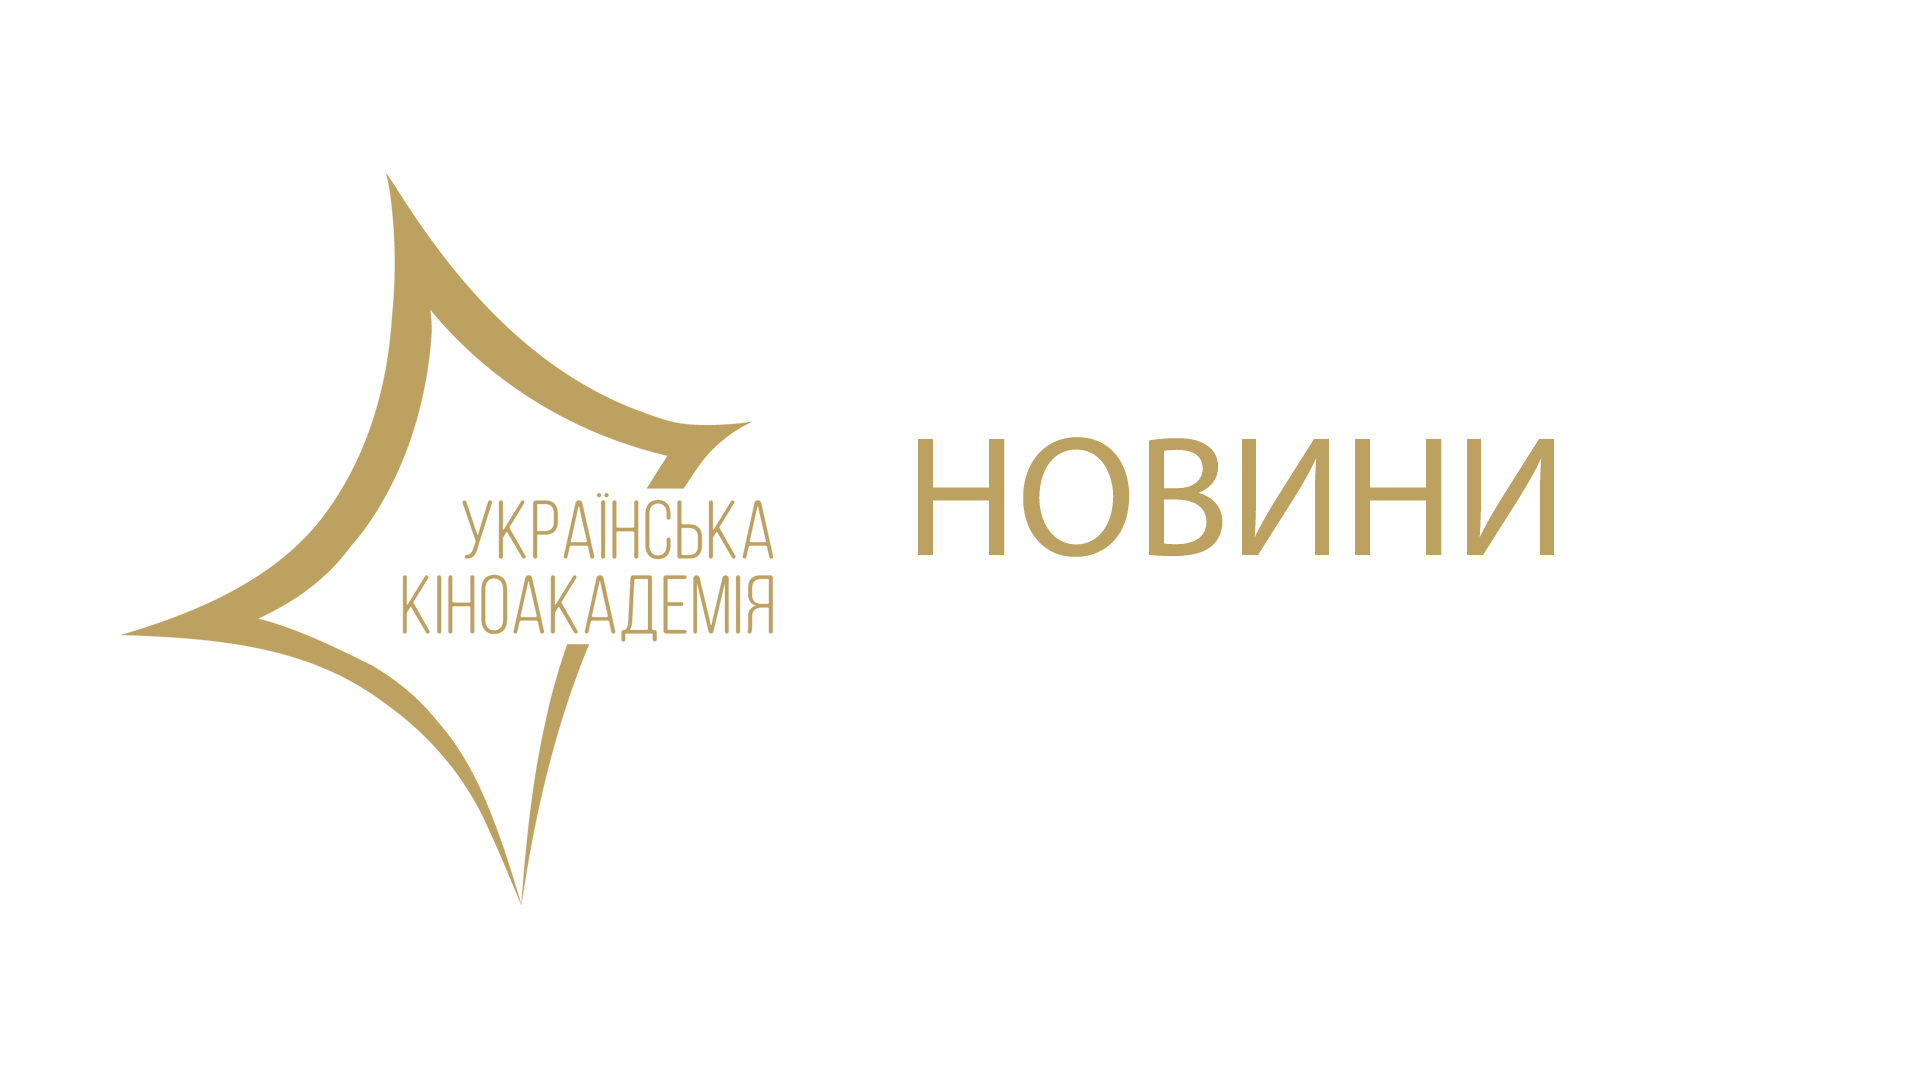 Українська кіноспільнота занепокоєна недостатнім фінансуванням кіногалузі та формуванням складу Ради з державної підтримки кінематографії